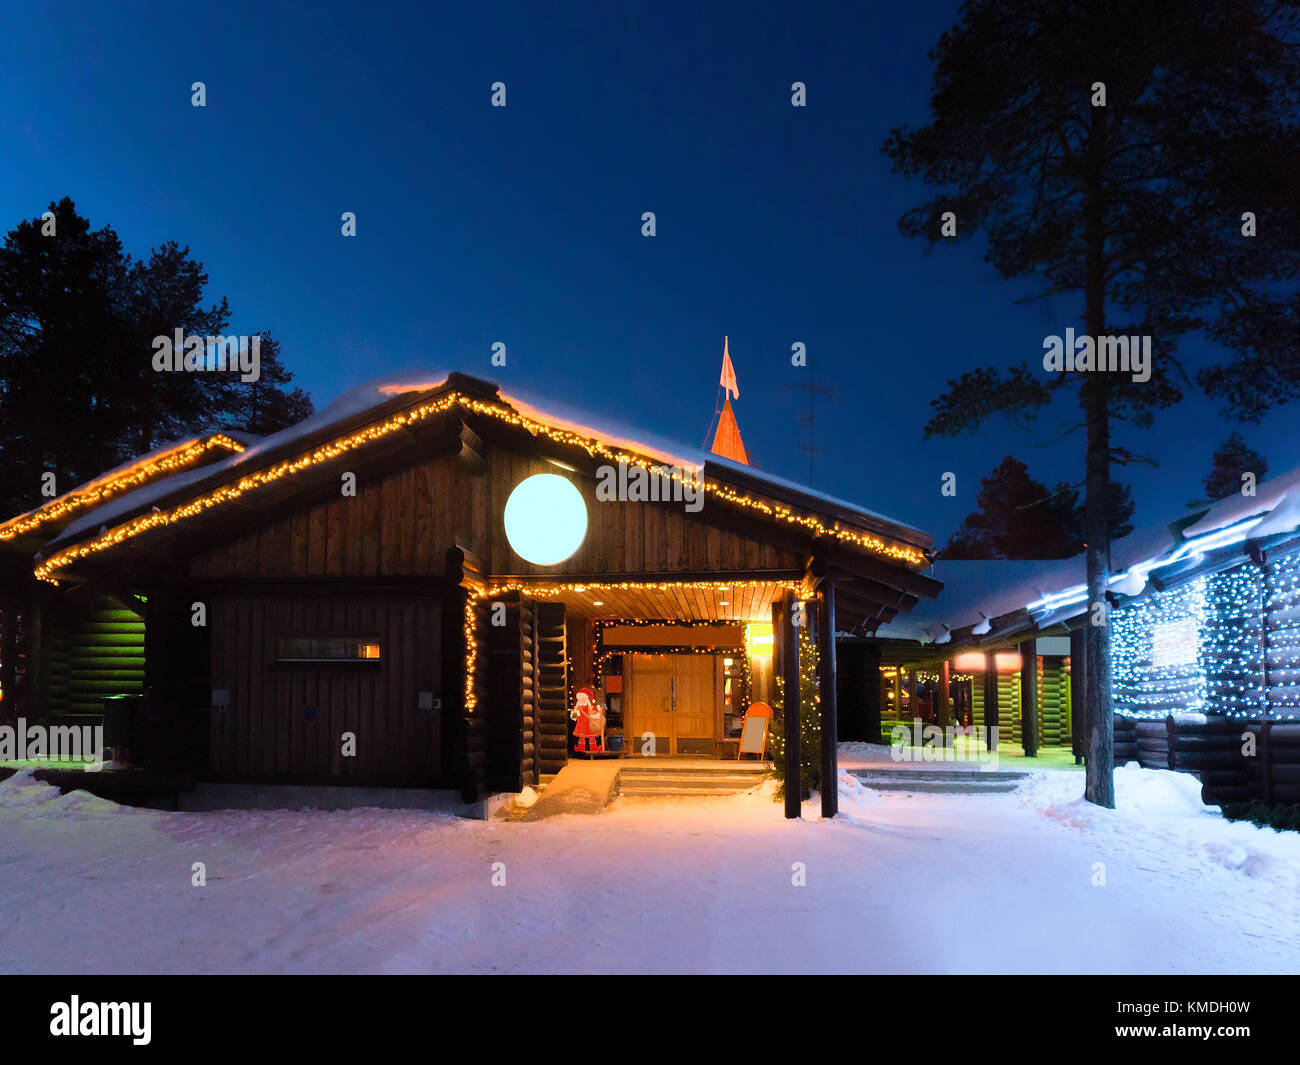 Au bureau du père noël santa village avec des arbres de Noël en Laponie finlandaise, la Scandinavie, le cercle arctique en hiver. la nuit Banque D'Images